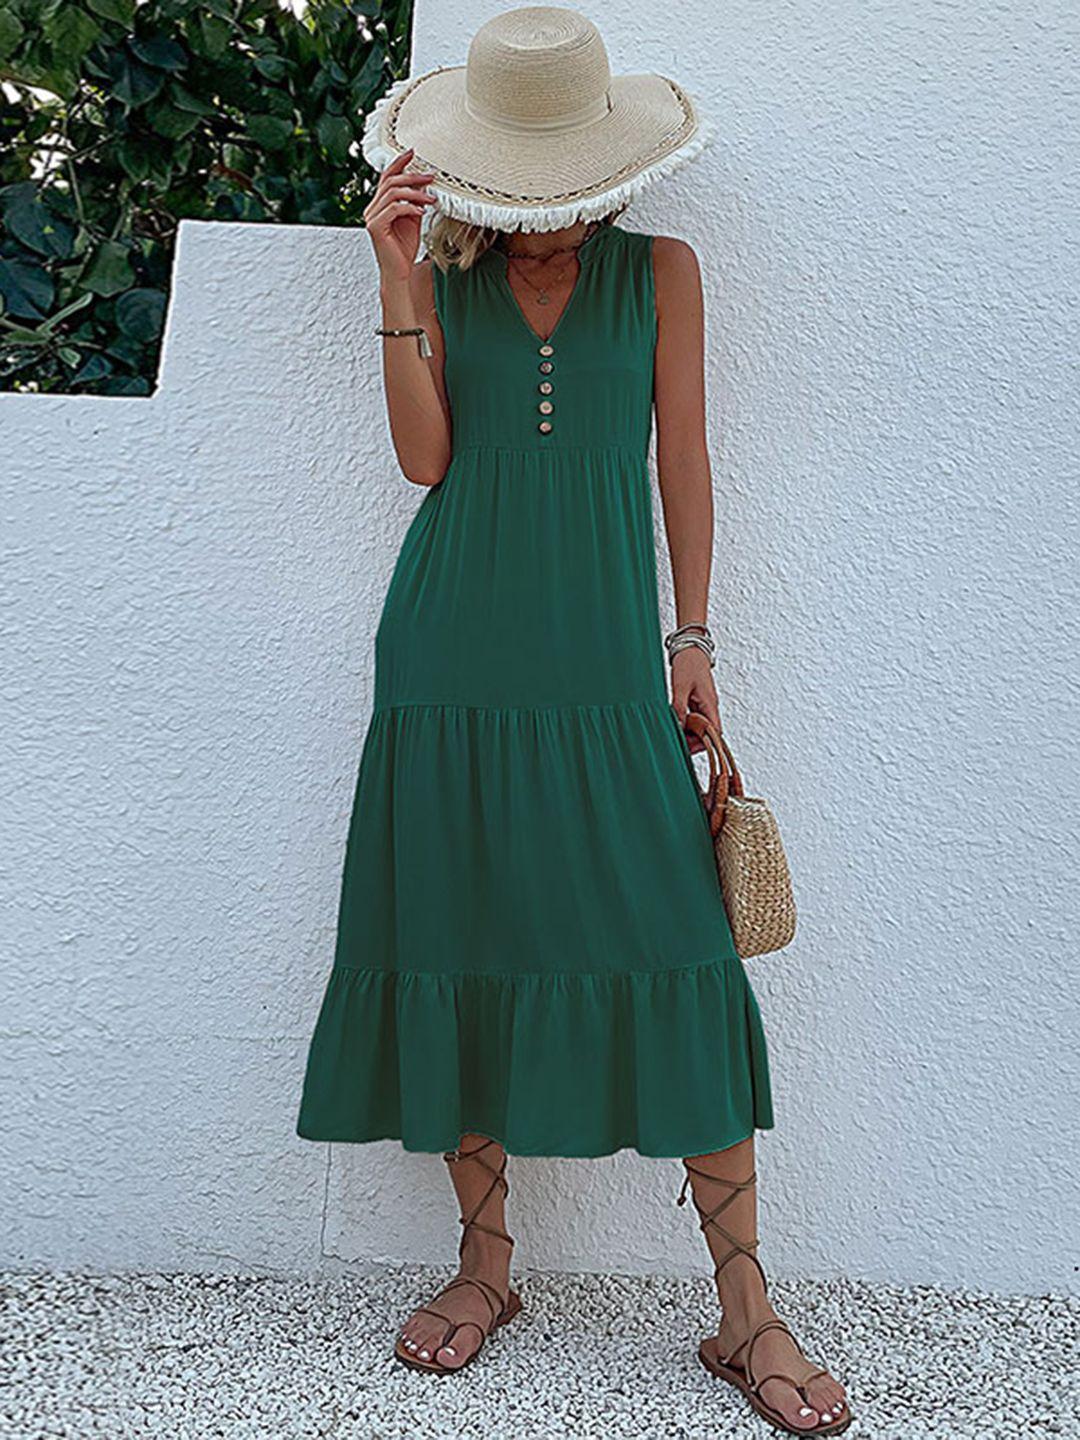 stylecast green v-neck a-line dress